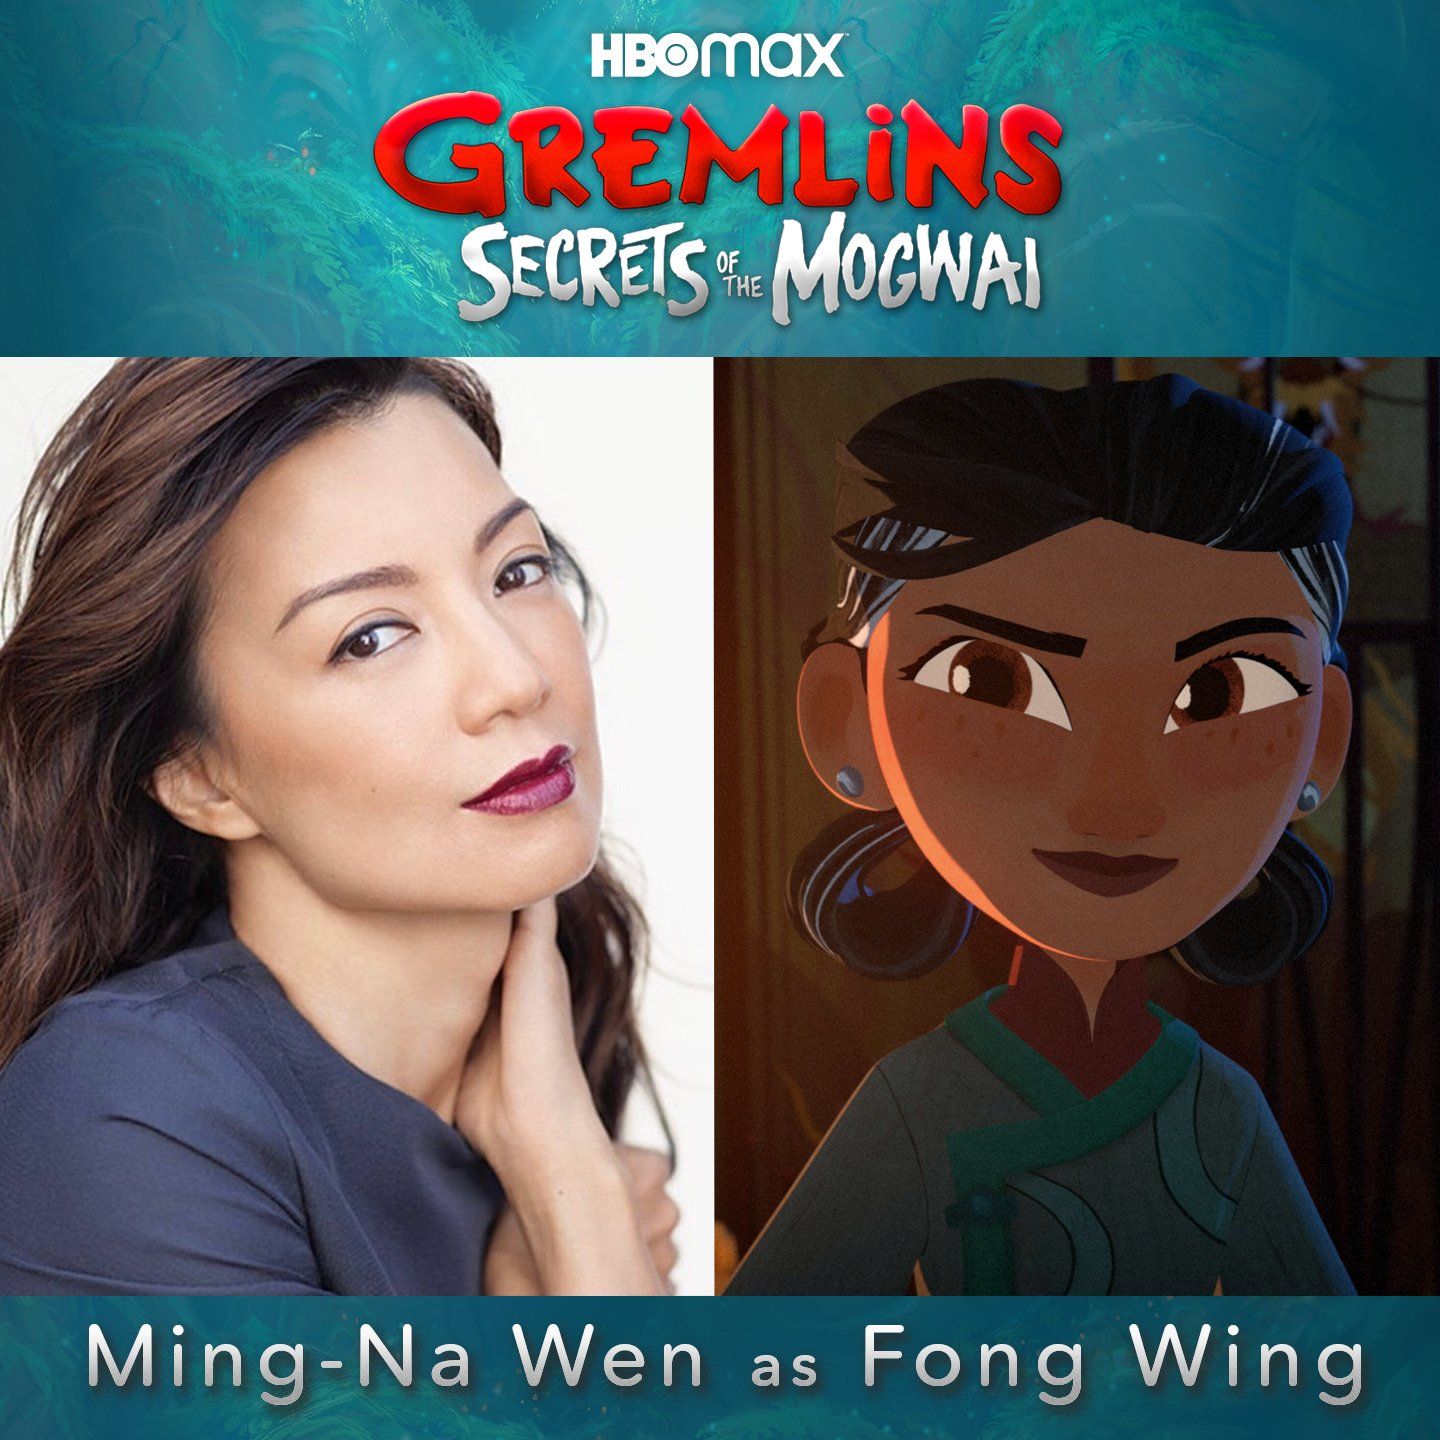 HBO Max Gremlins Secrets of the Mogwai Ming N Wen